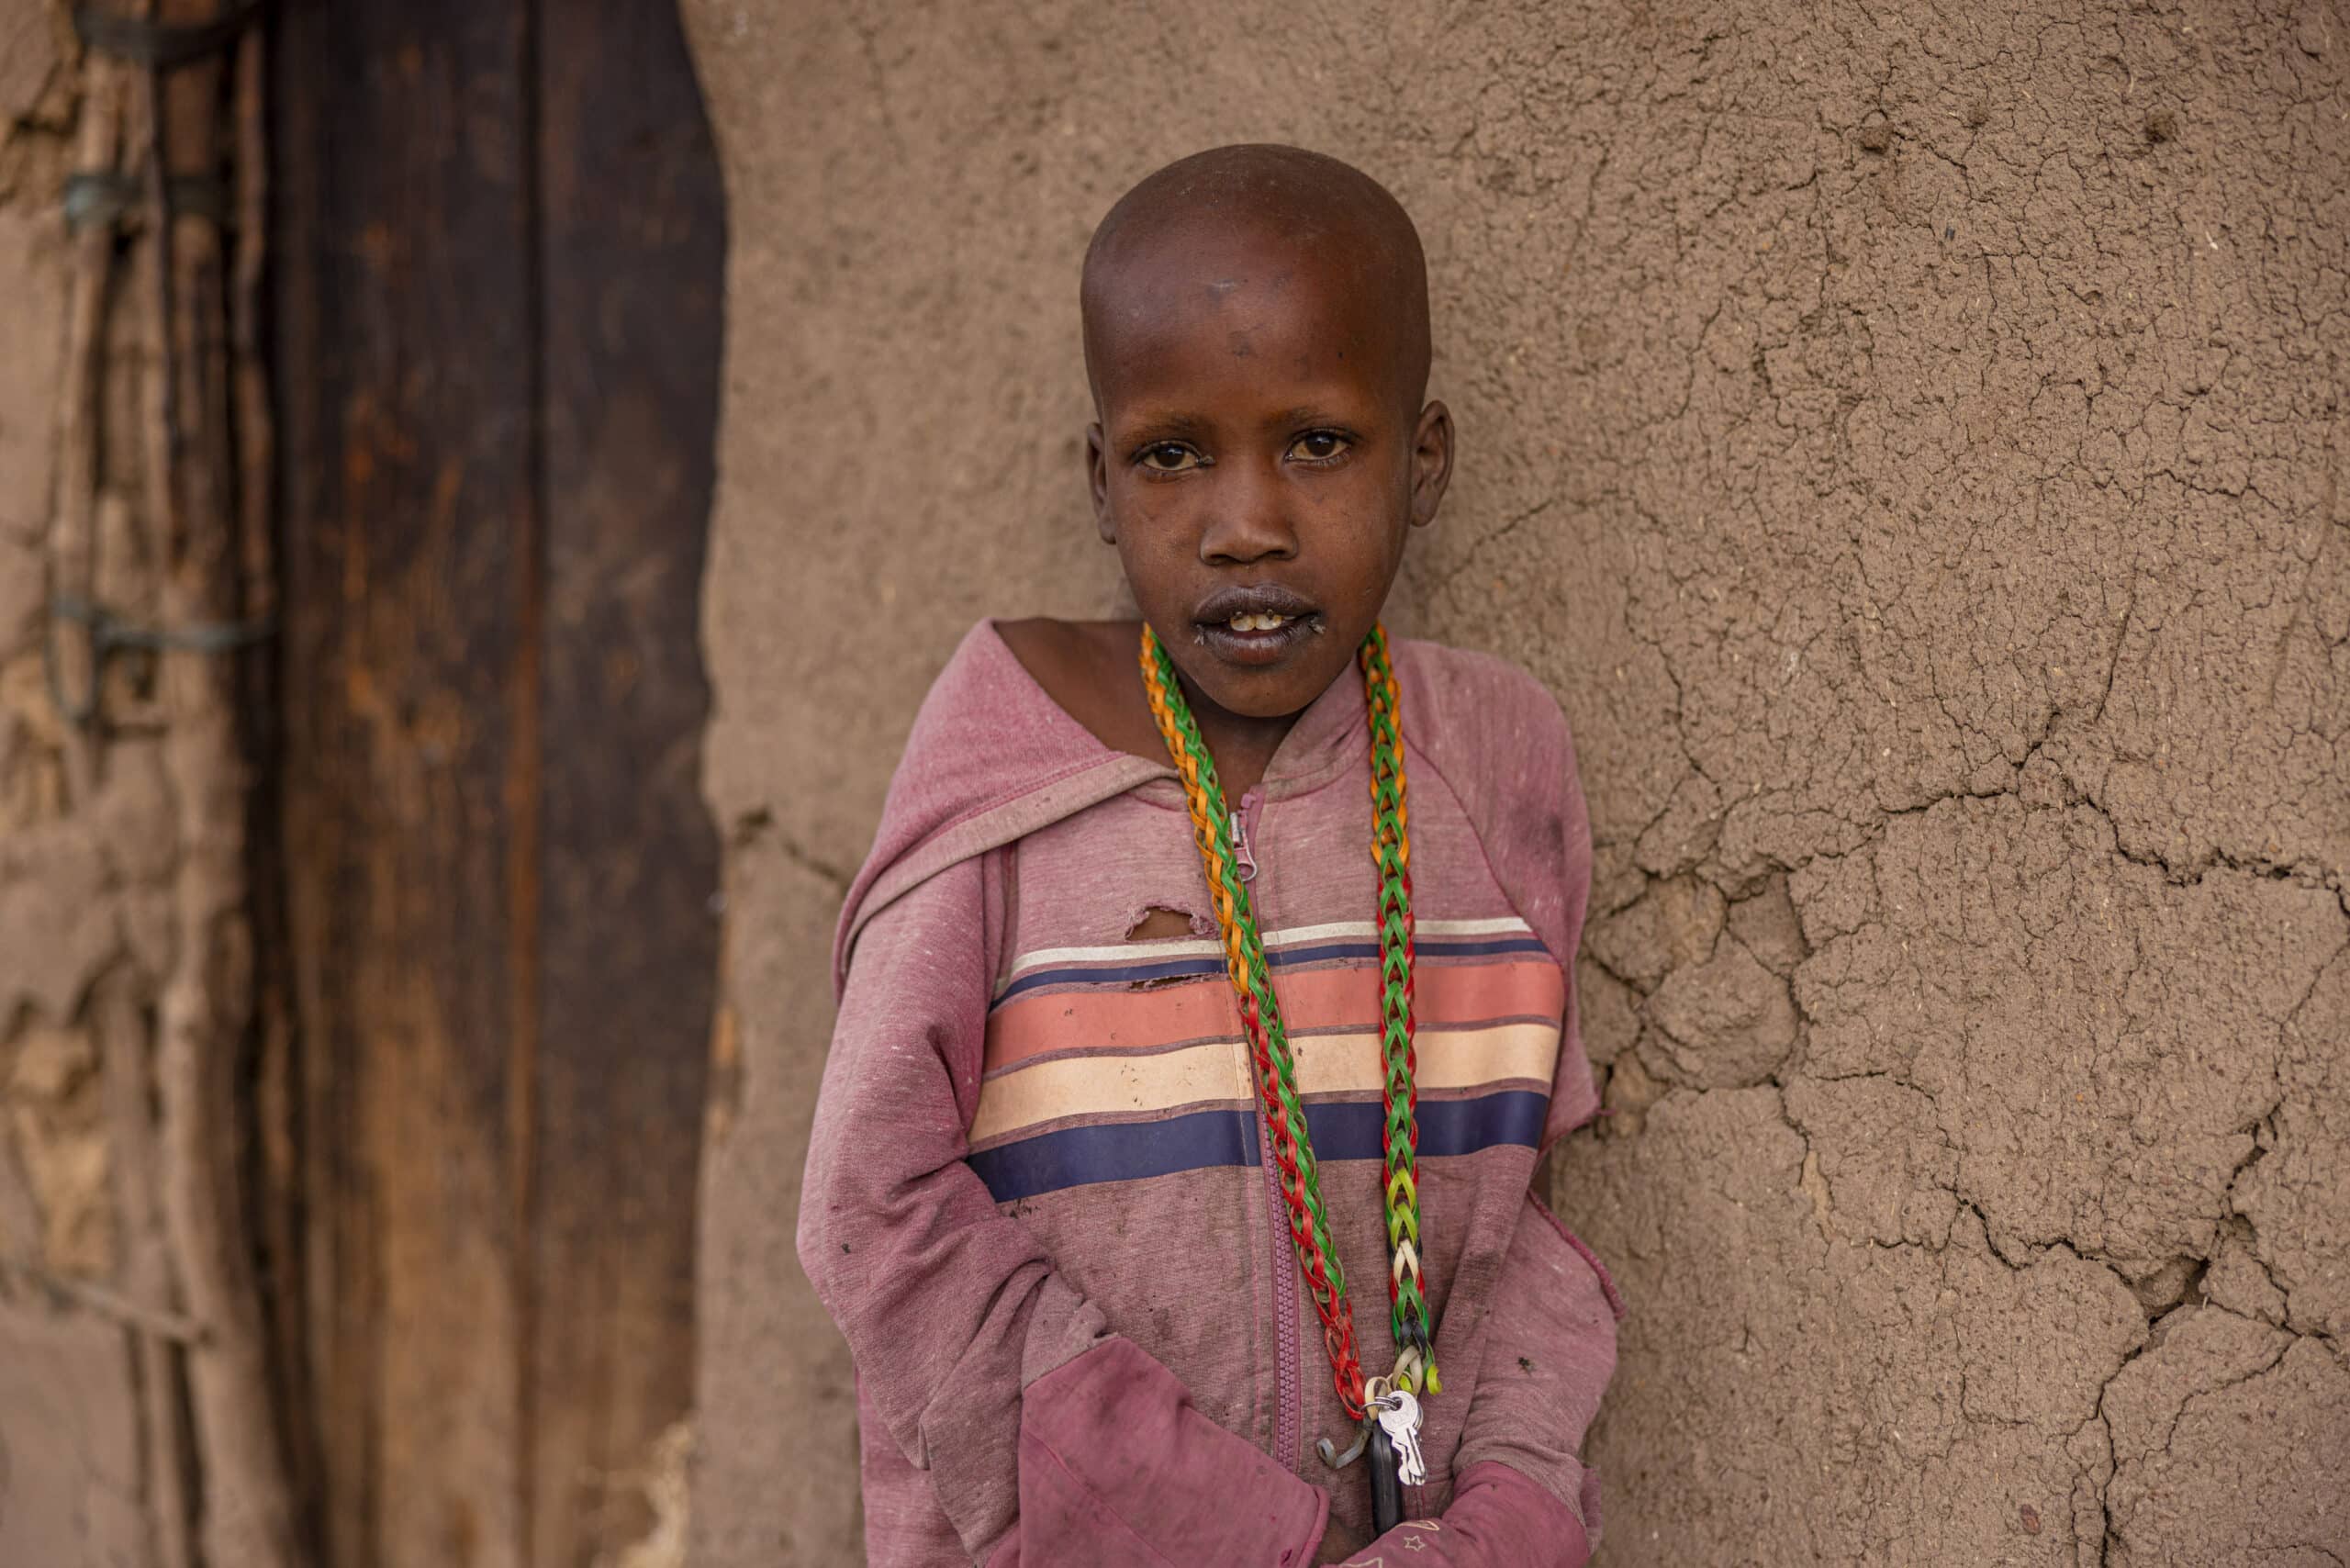 Ein kleiner Junge mit rasiertem Kopf steht vor einer rissigen Lehmwand. Er trägt einen gestreiften Kapuzenpullover und bunte Perlenketten und blickt direkt in die Kamera. © Fotografie Tomas Rodriguez